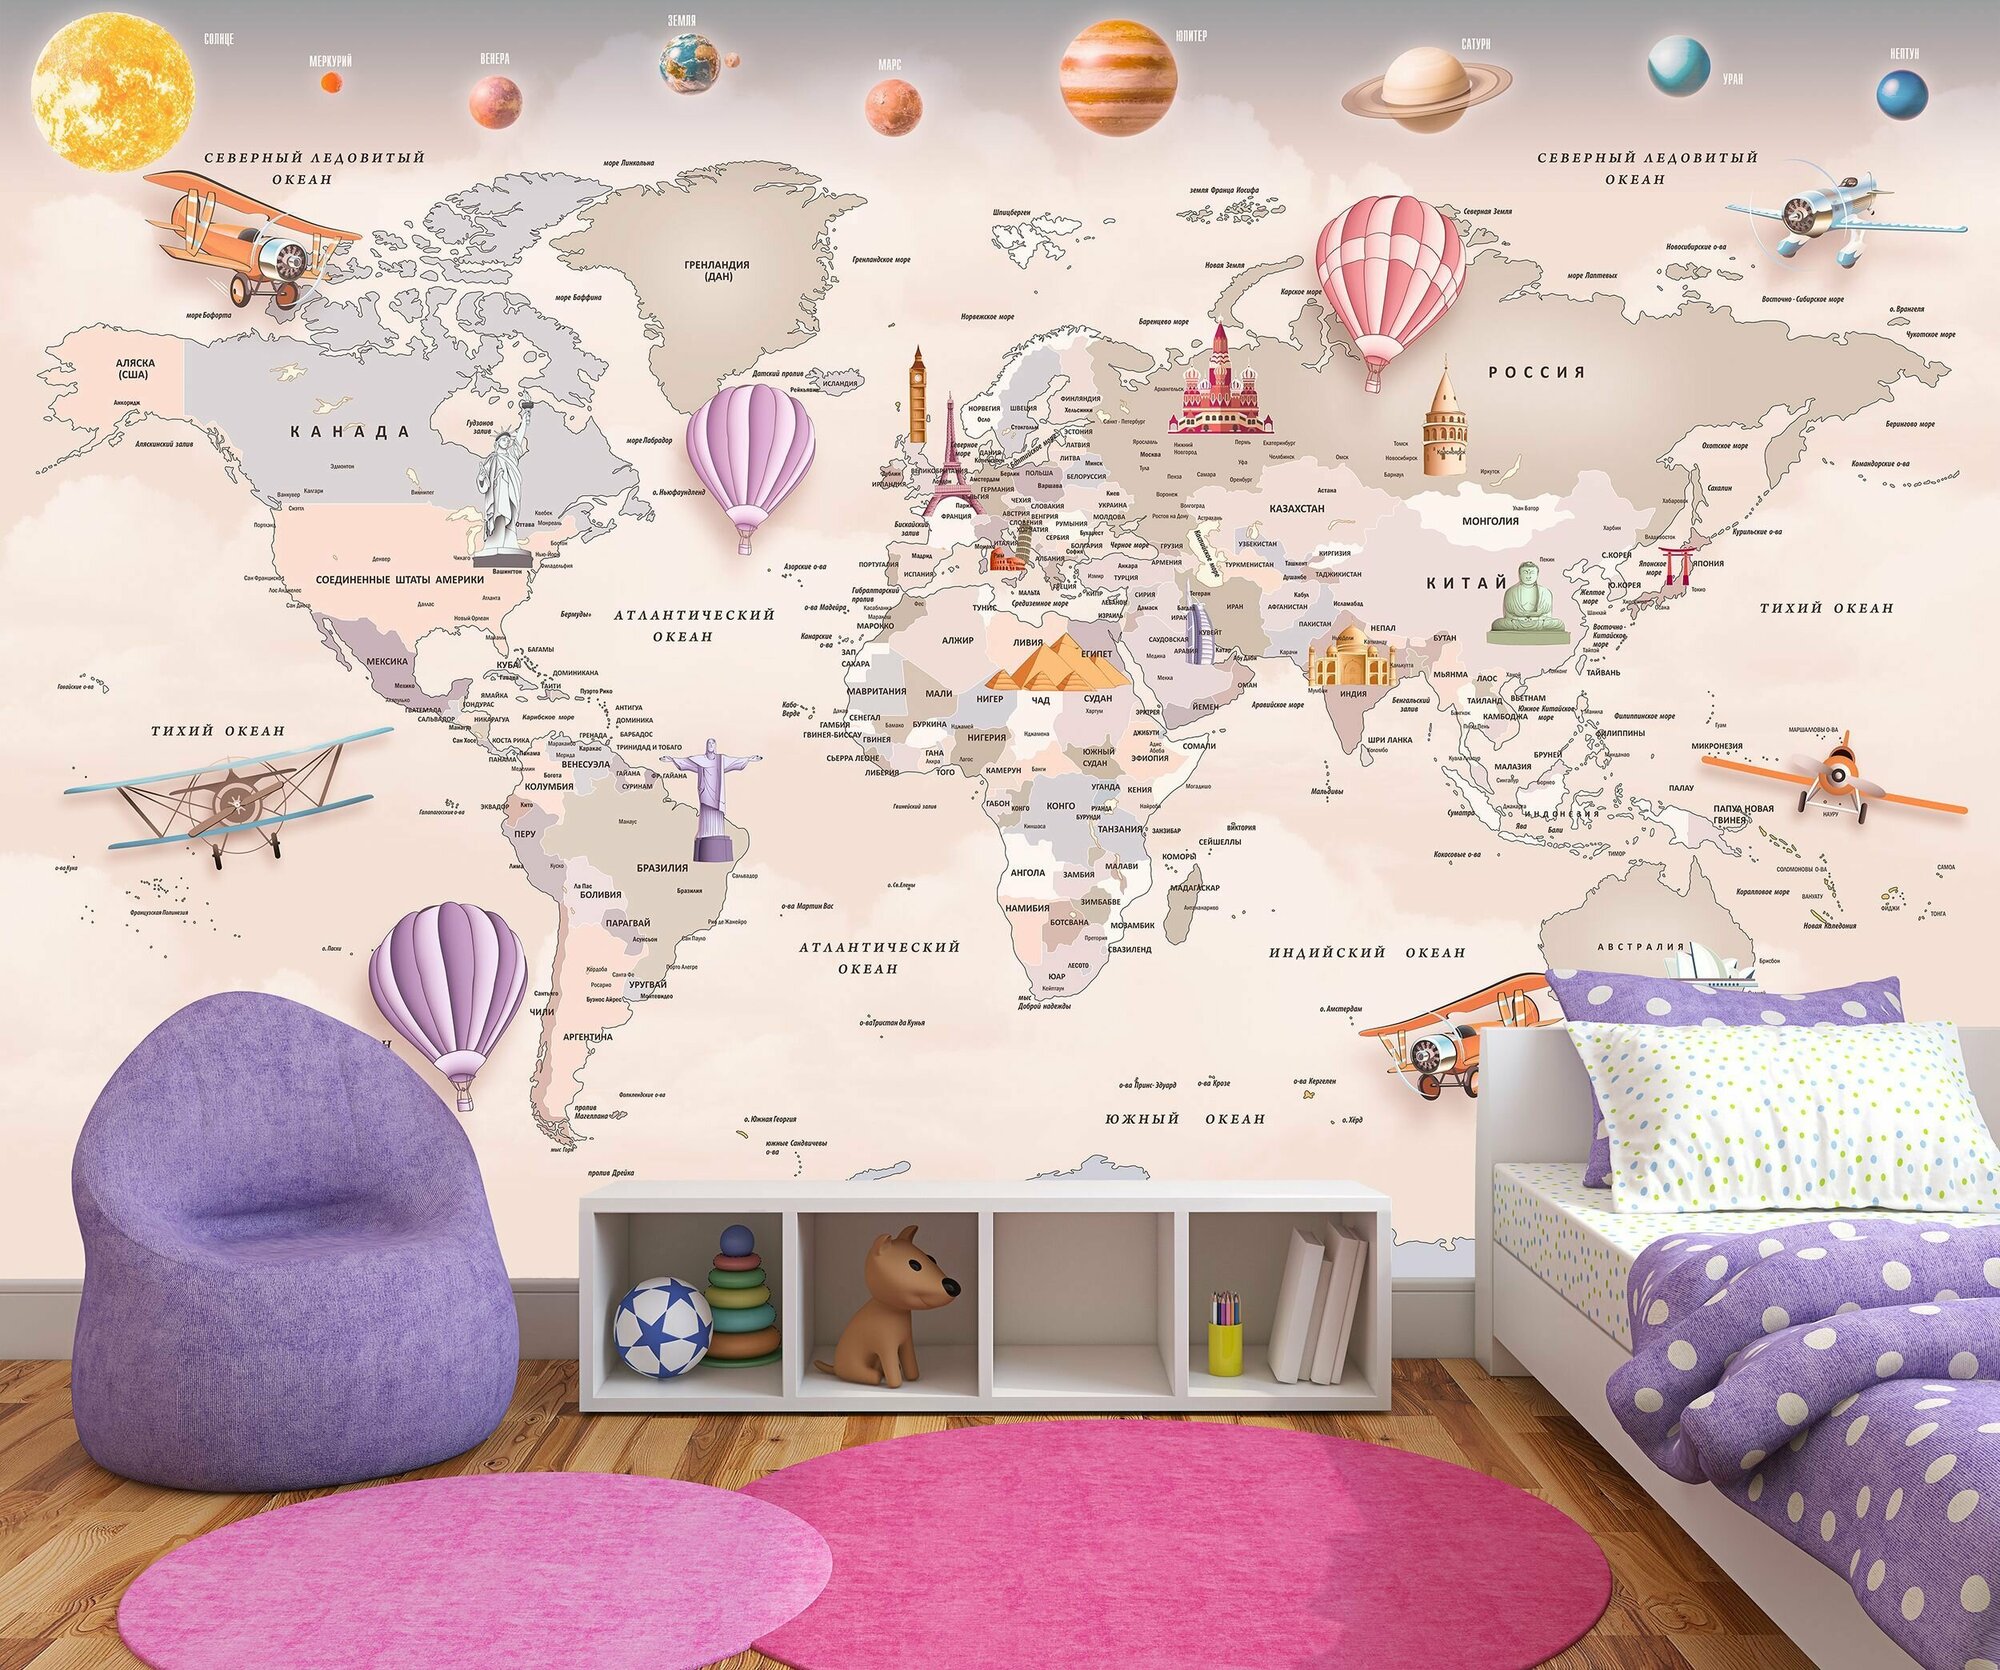 Фотообои флизелиновые 300х200см. на стену. Серия MAPS ARTDELUXE. 3д детская карта мира и планеты. Обои дизайнерские эксклюзивные для детской комнаты.